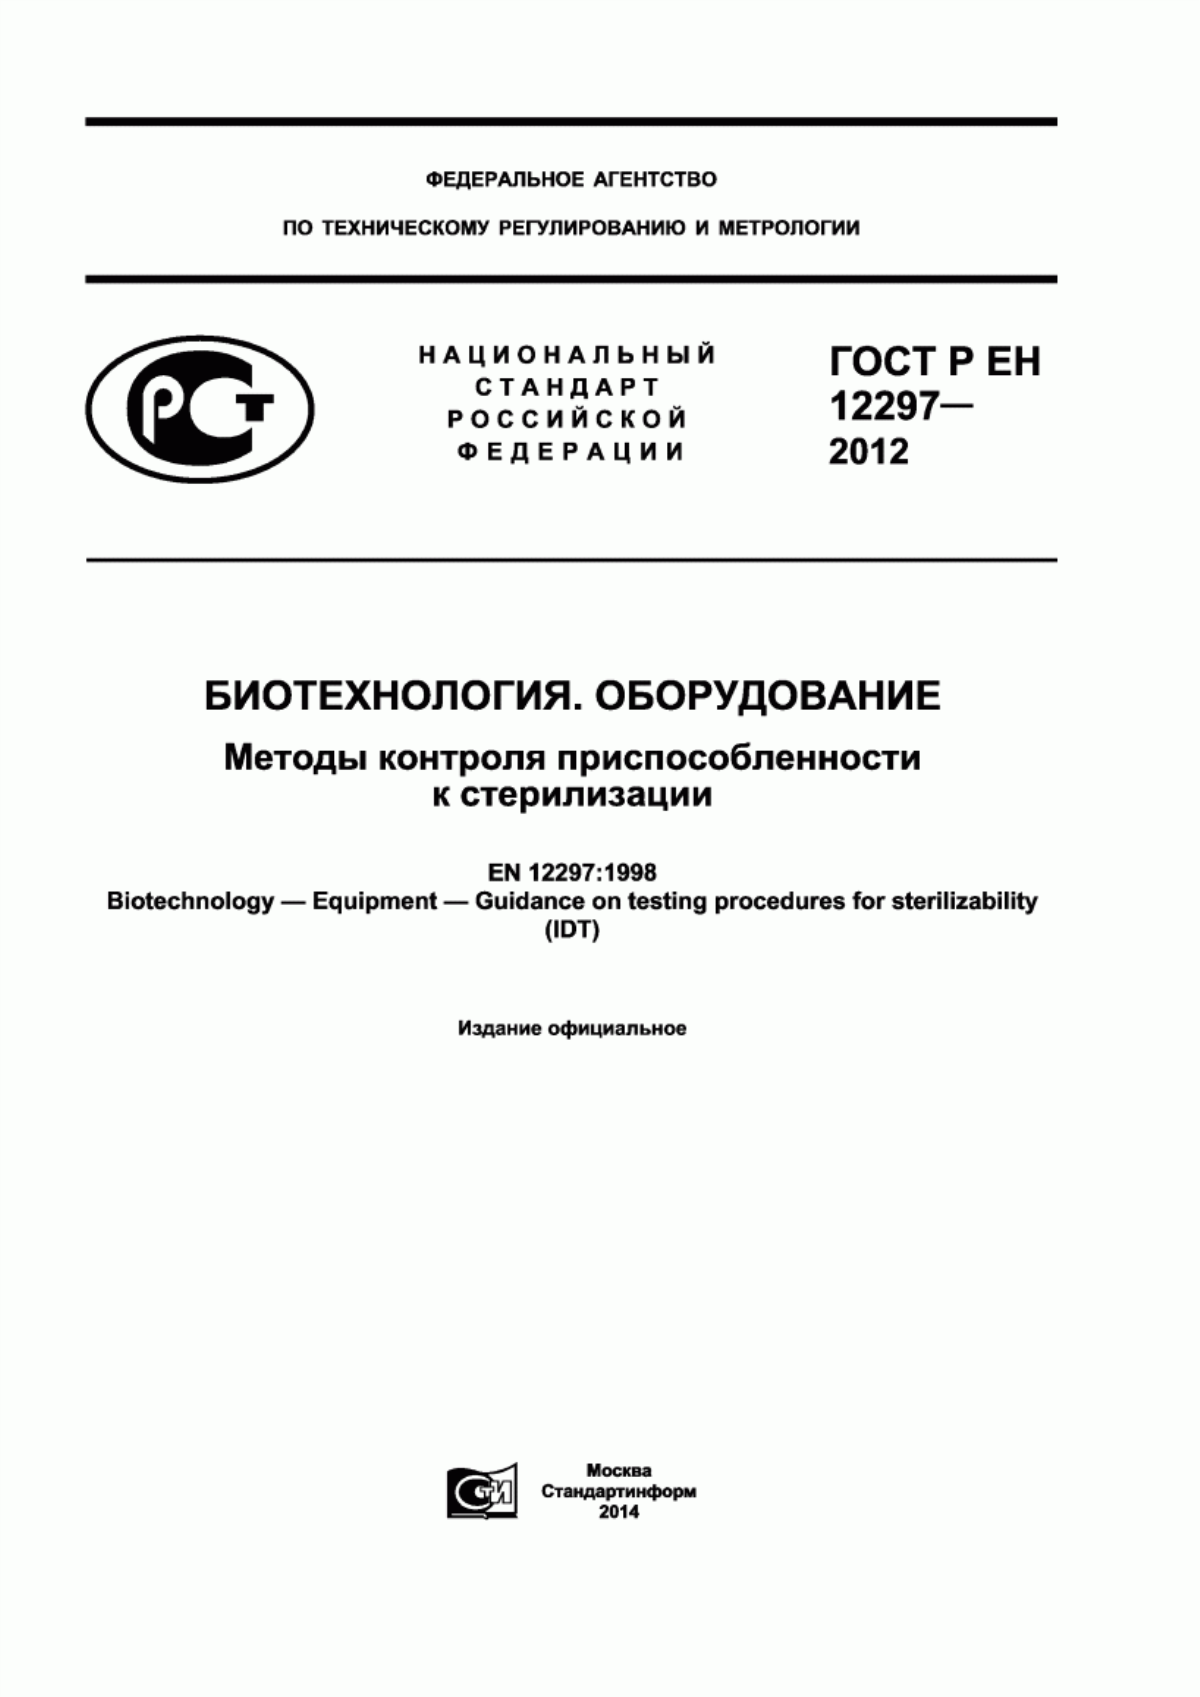 ГОСТ Р ЕН 12297-2012 Биотехнология. Оборудование. Методы контроля приспособленности к стерилизации